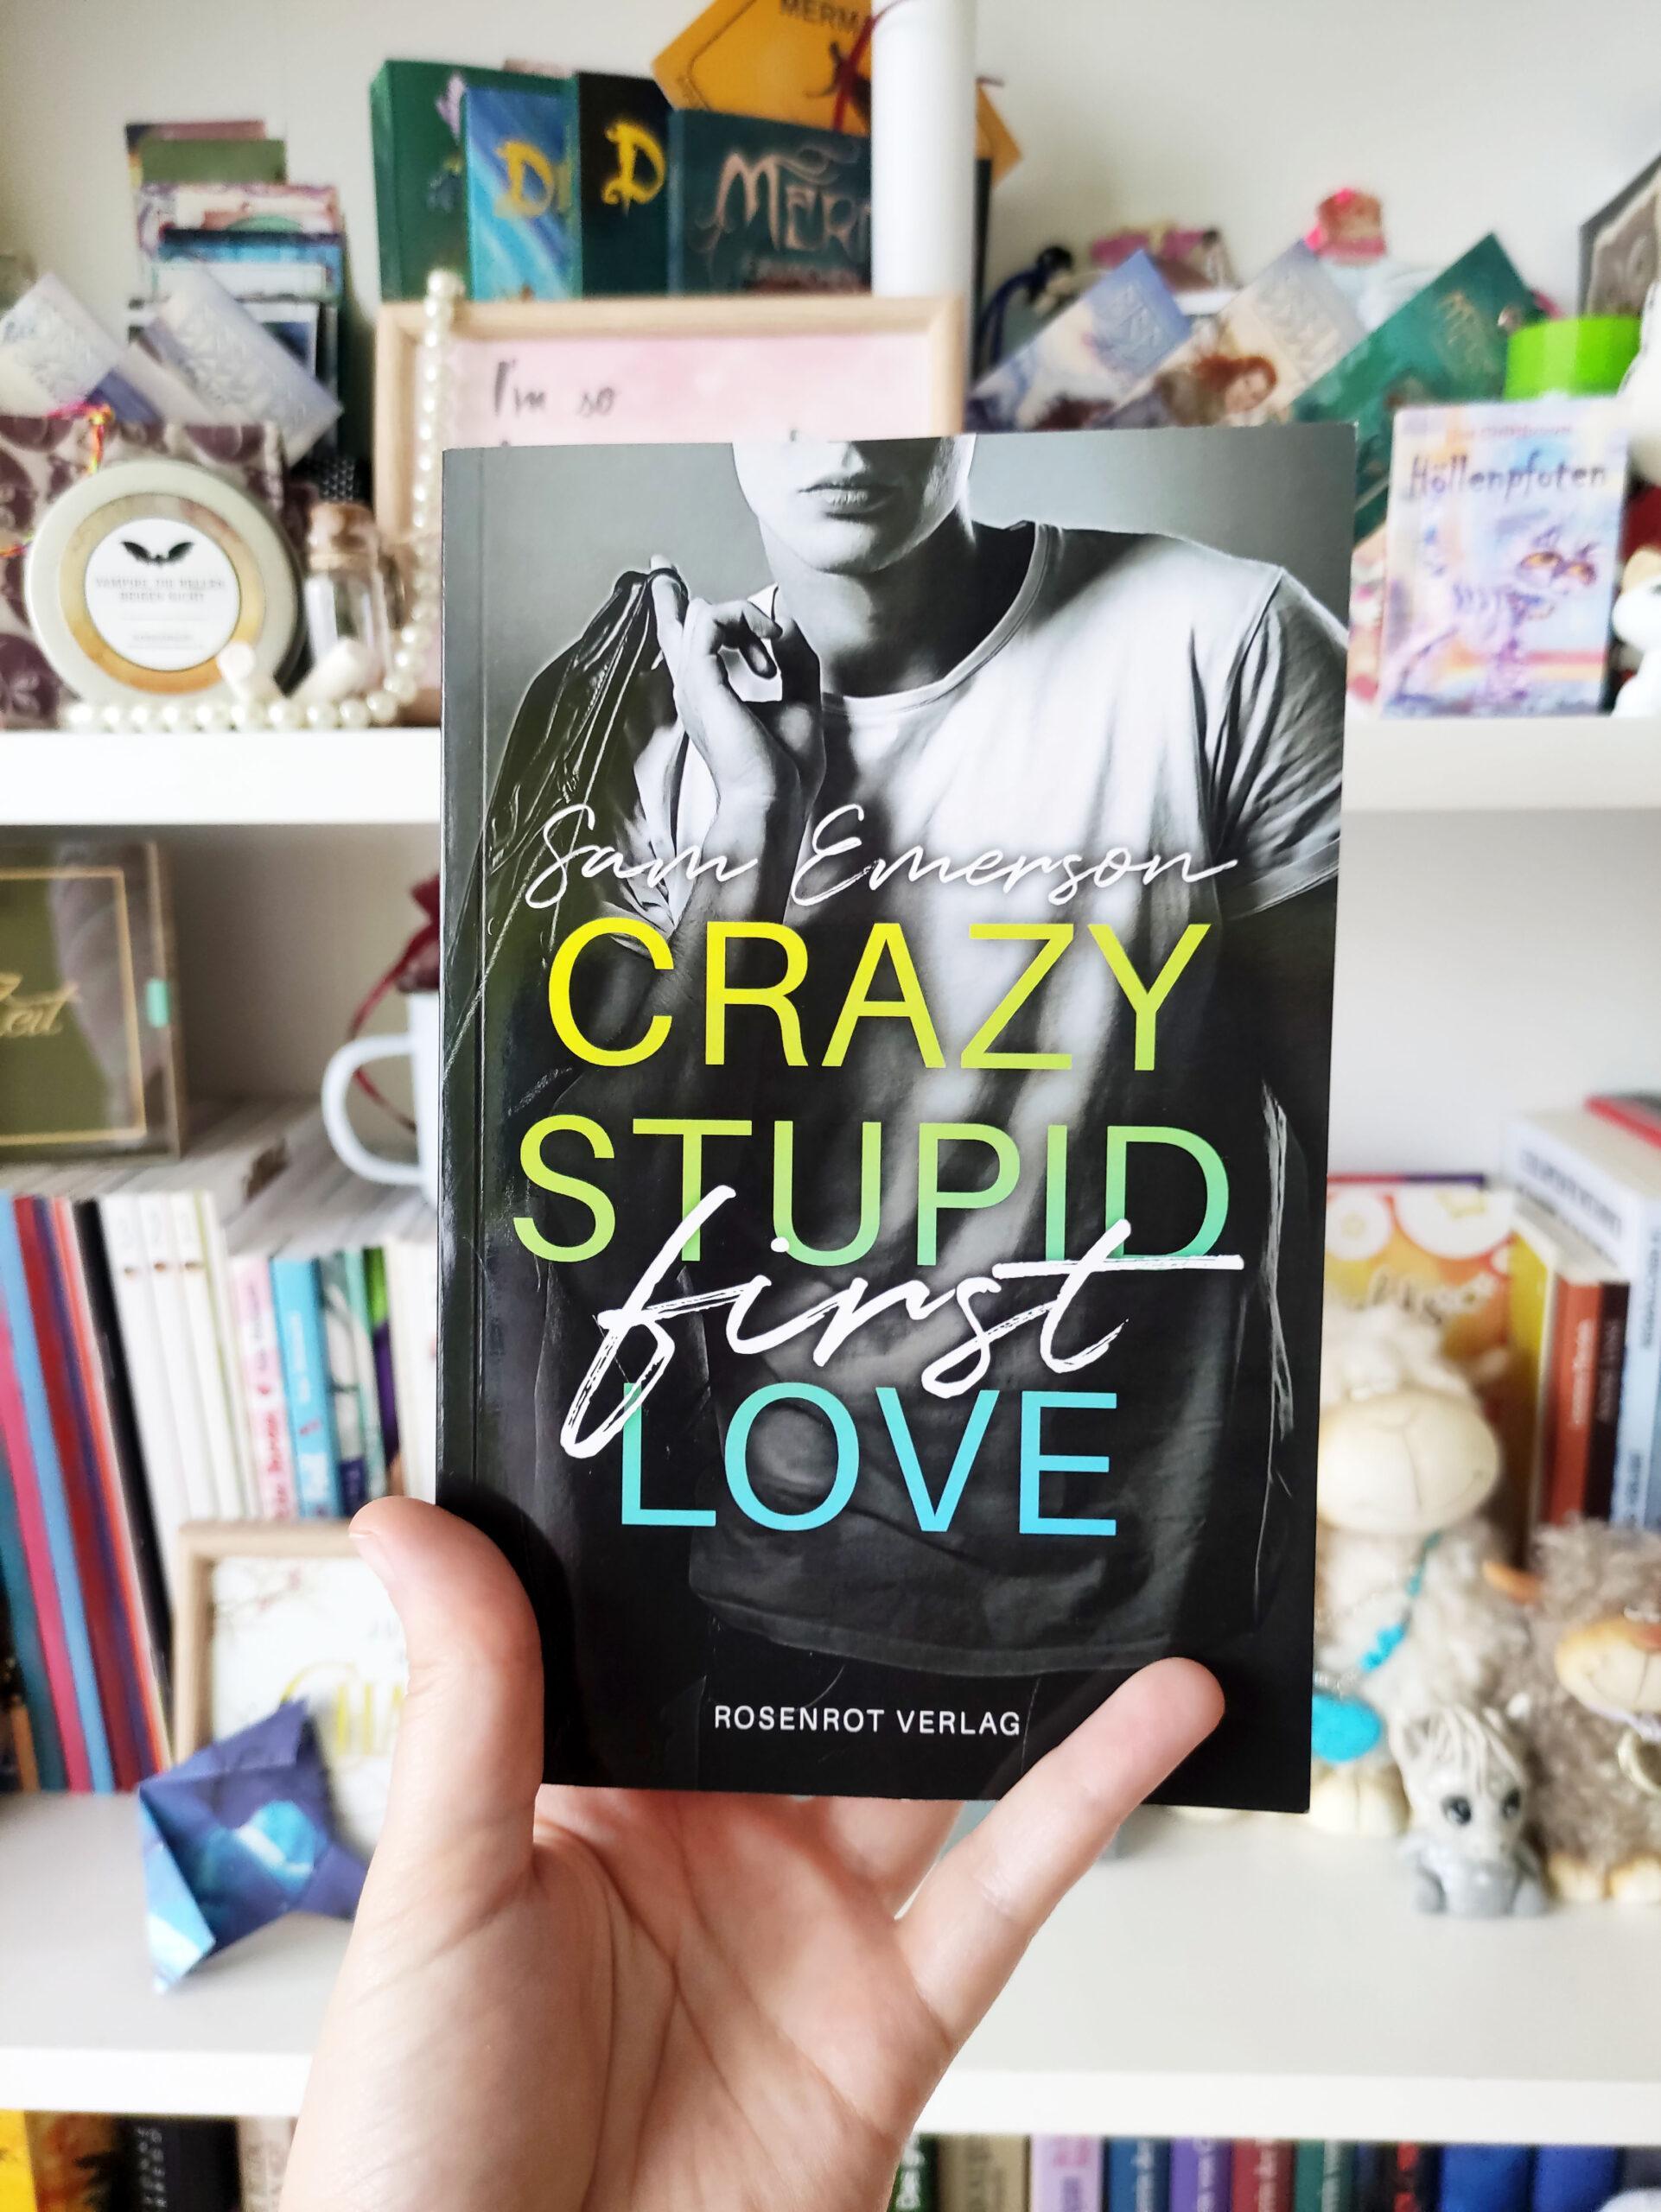 Das Buch Crazy Stupid First Love wird vor ein Bücherregal gehalten